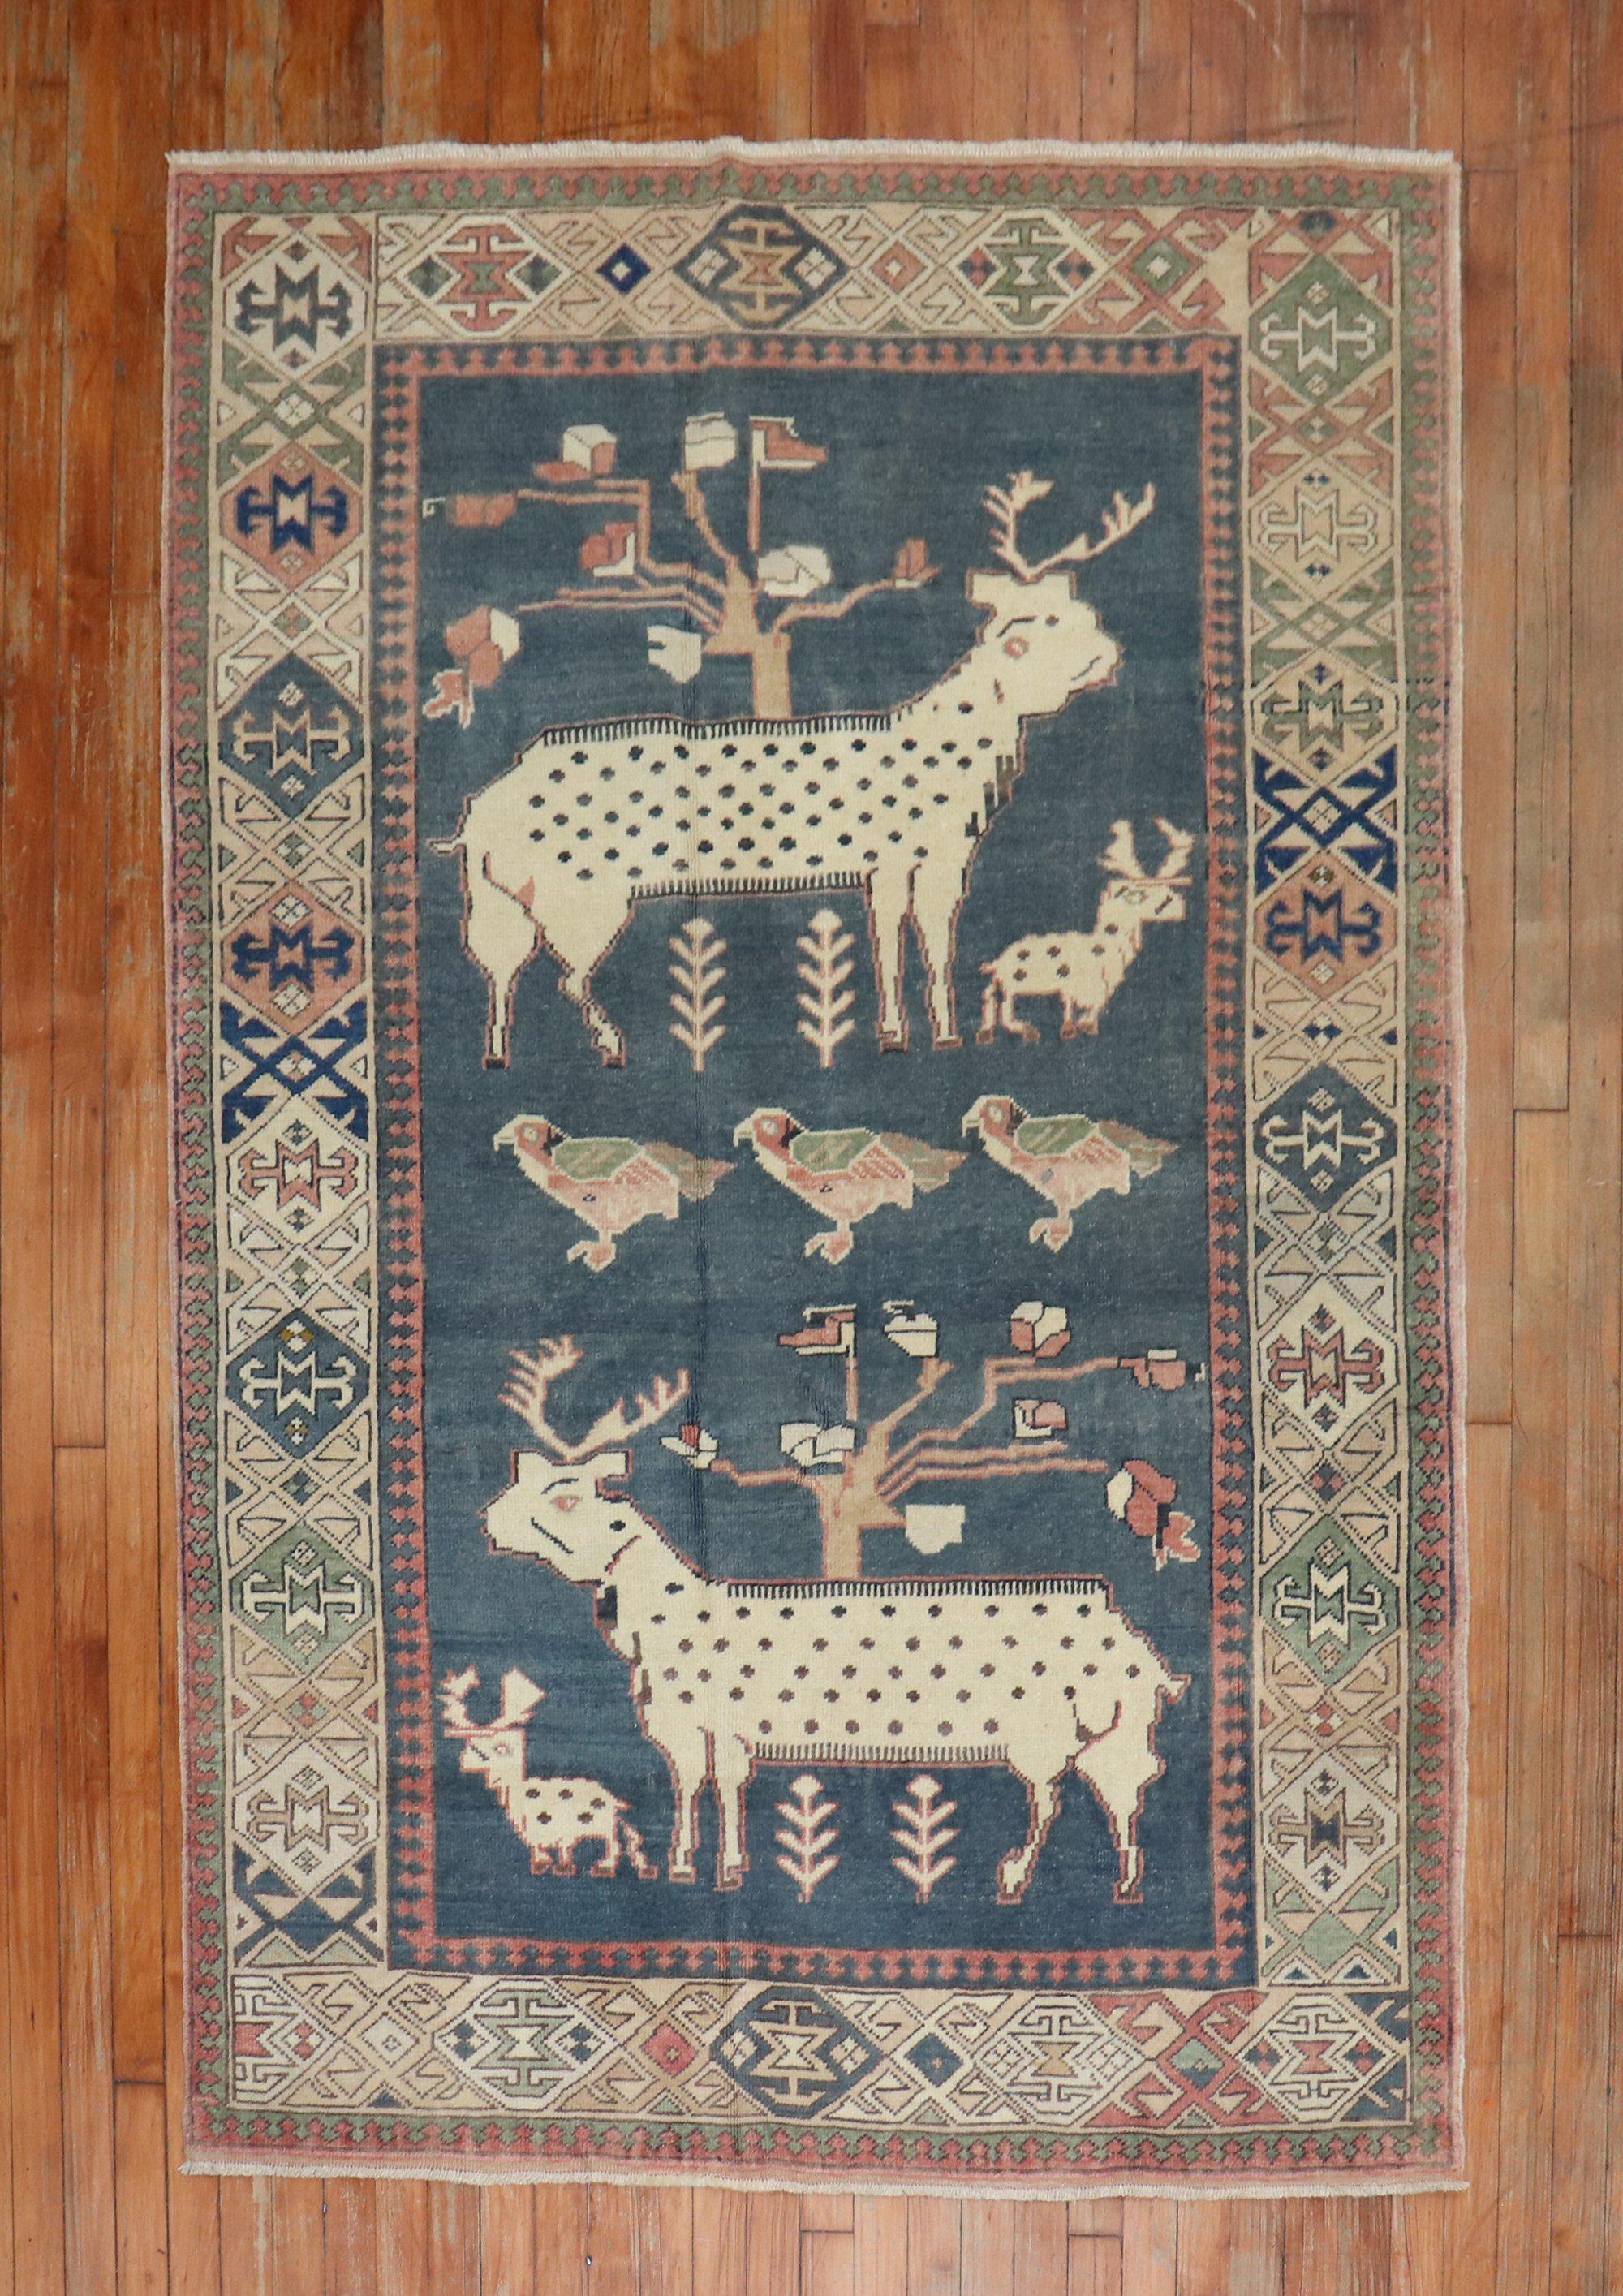 Türkischer Teppich des 20. Jahrhunderts mit 2 großen Ziegen, 2 kleinen Ziegen und 3 Tauben auf Holzkohlegrund

Maße: 4'7'' x 6'9''.